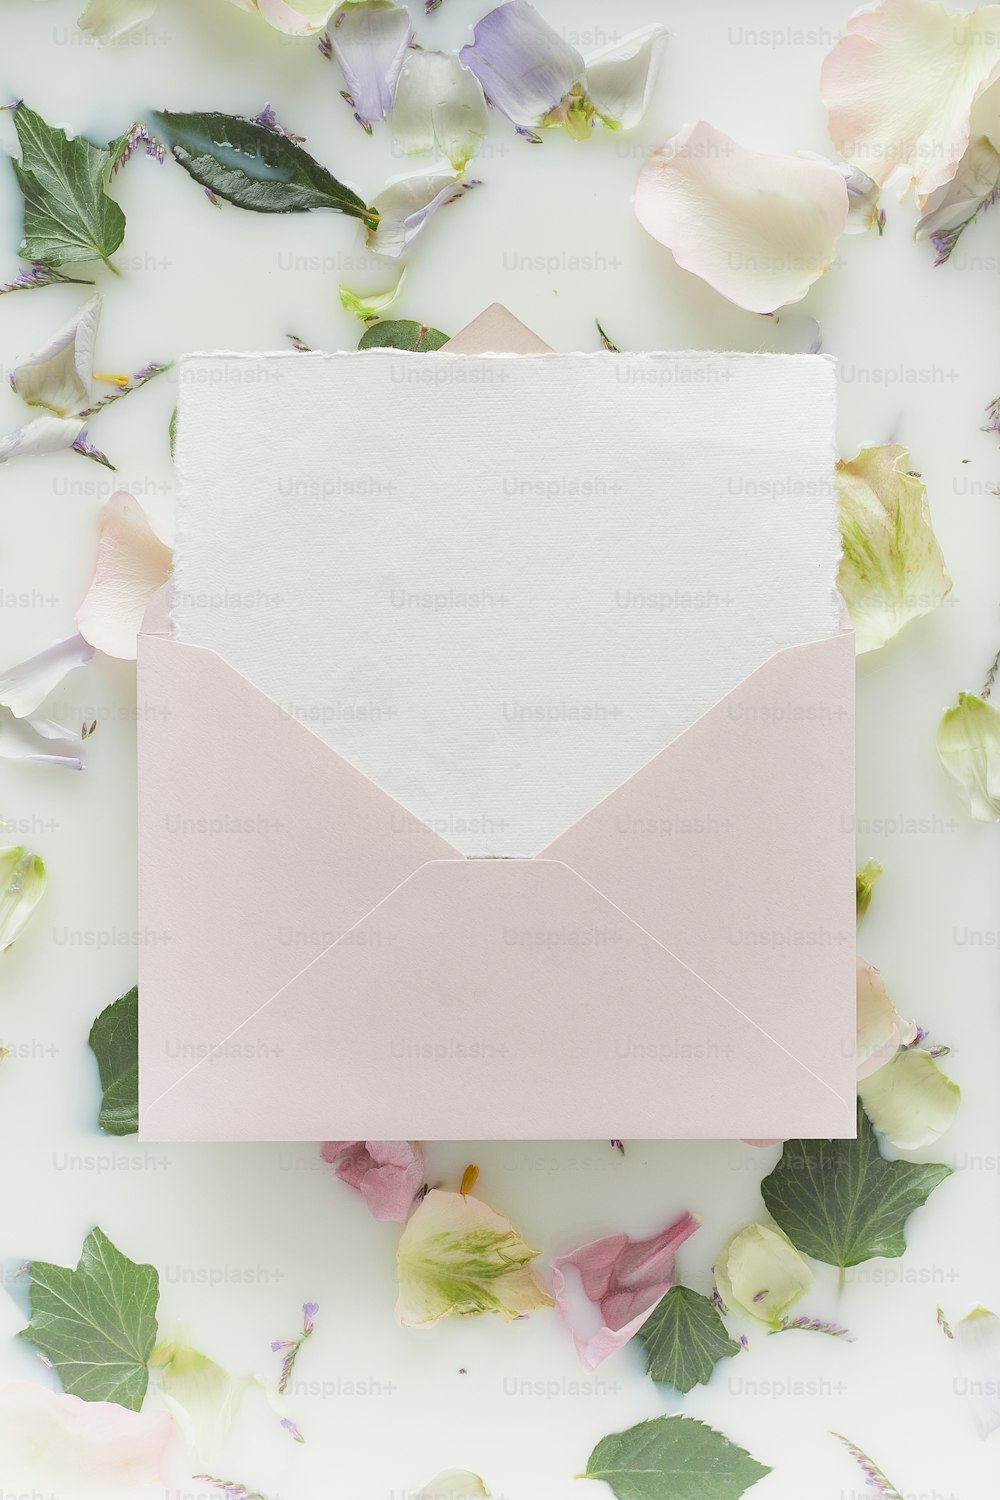 una busta bianca con una carta rosa all'interno circondata da fiori